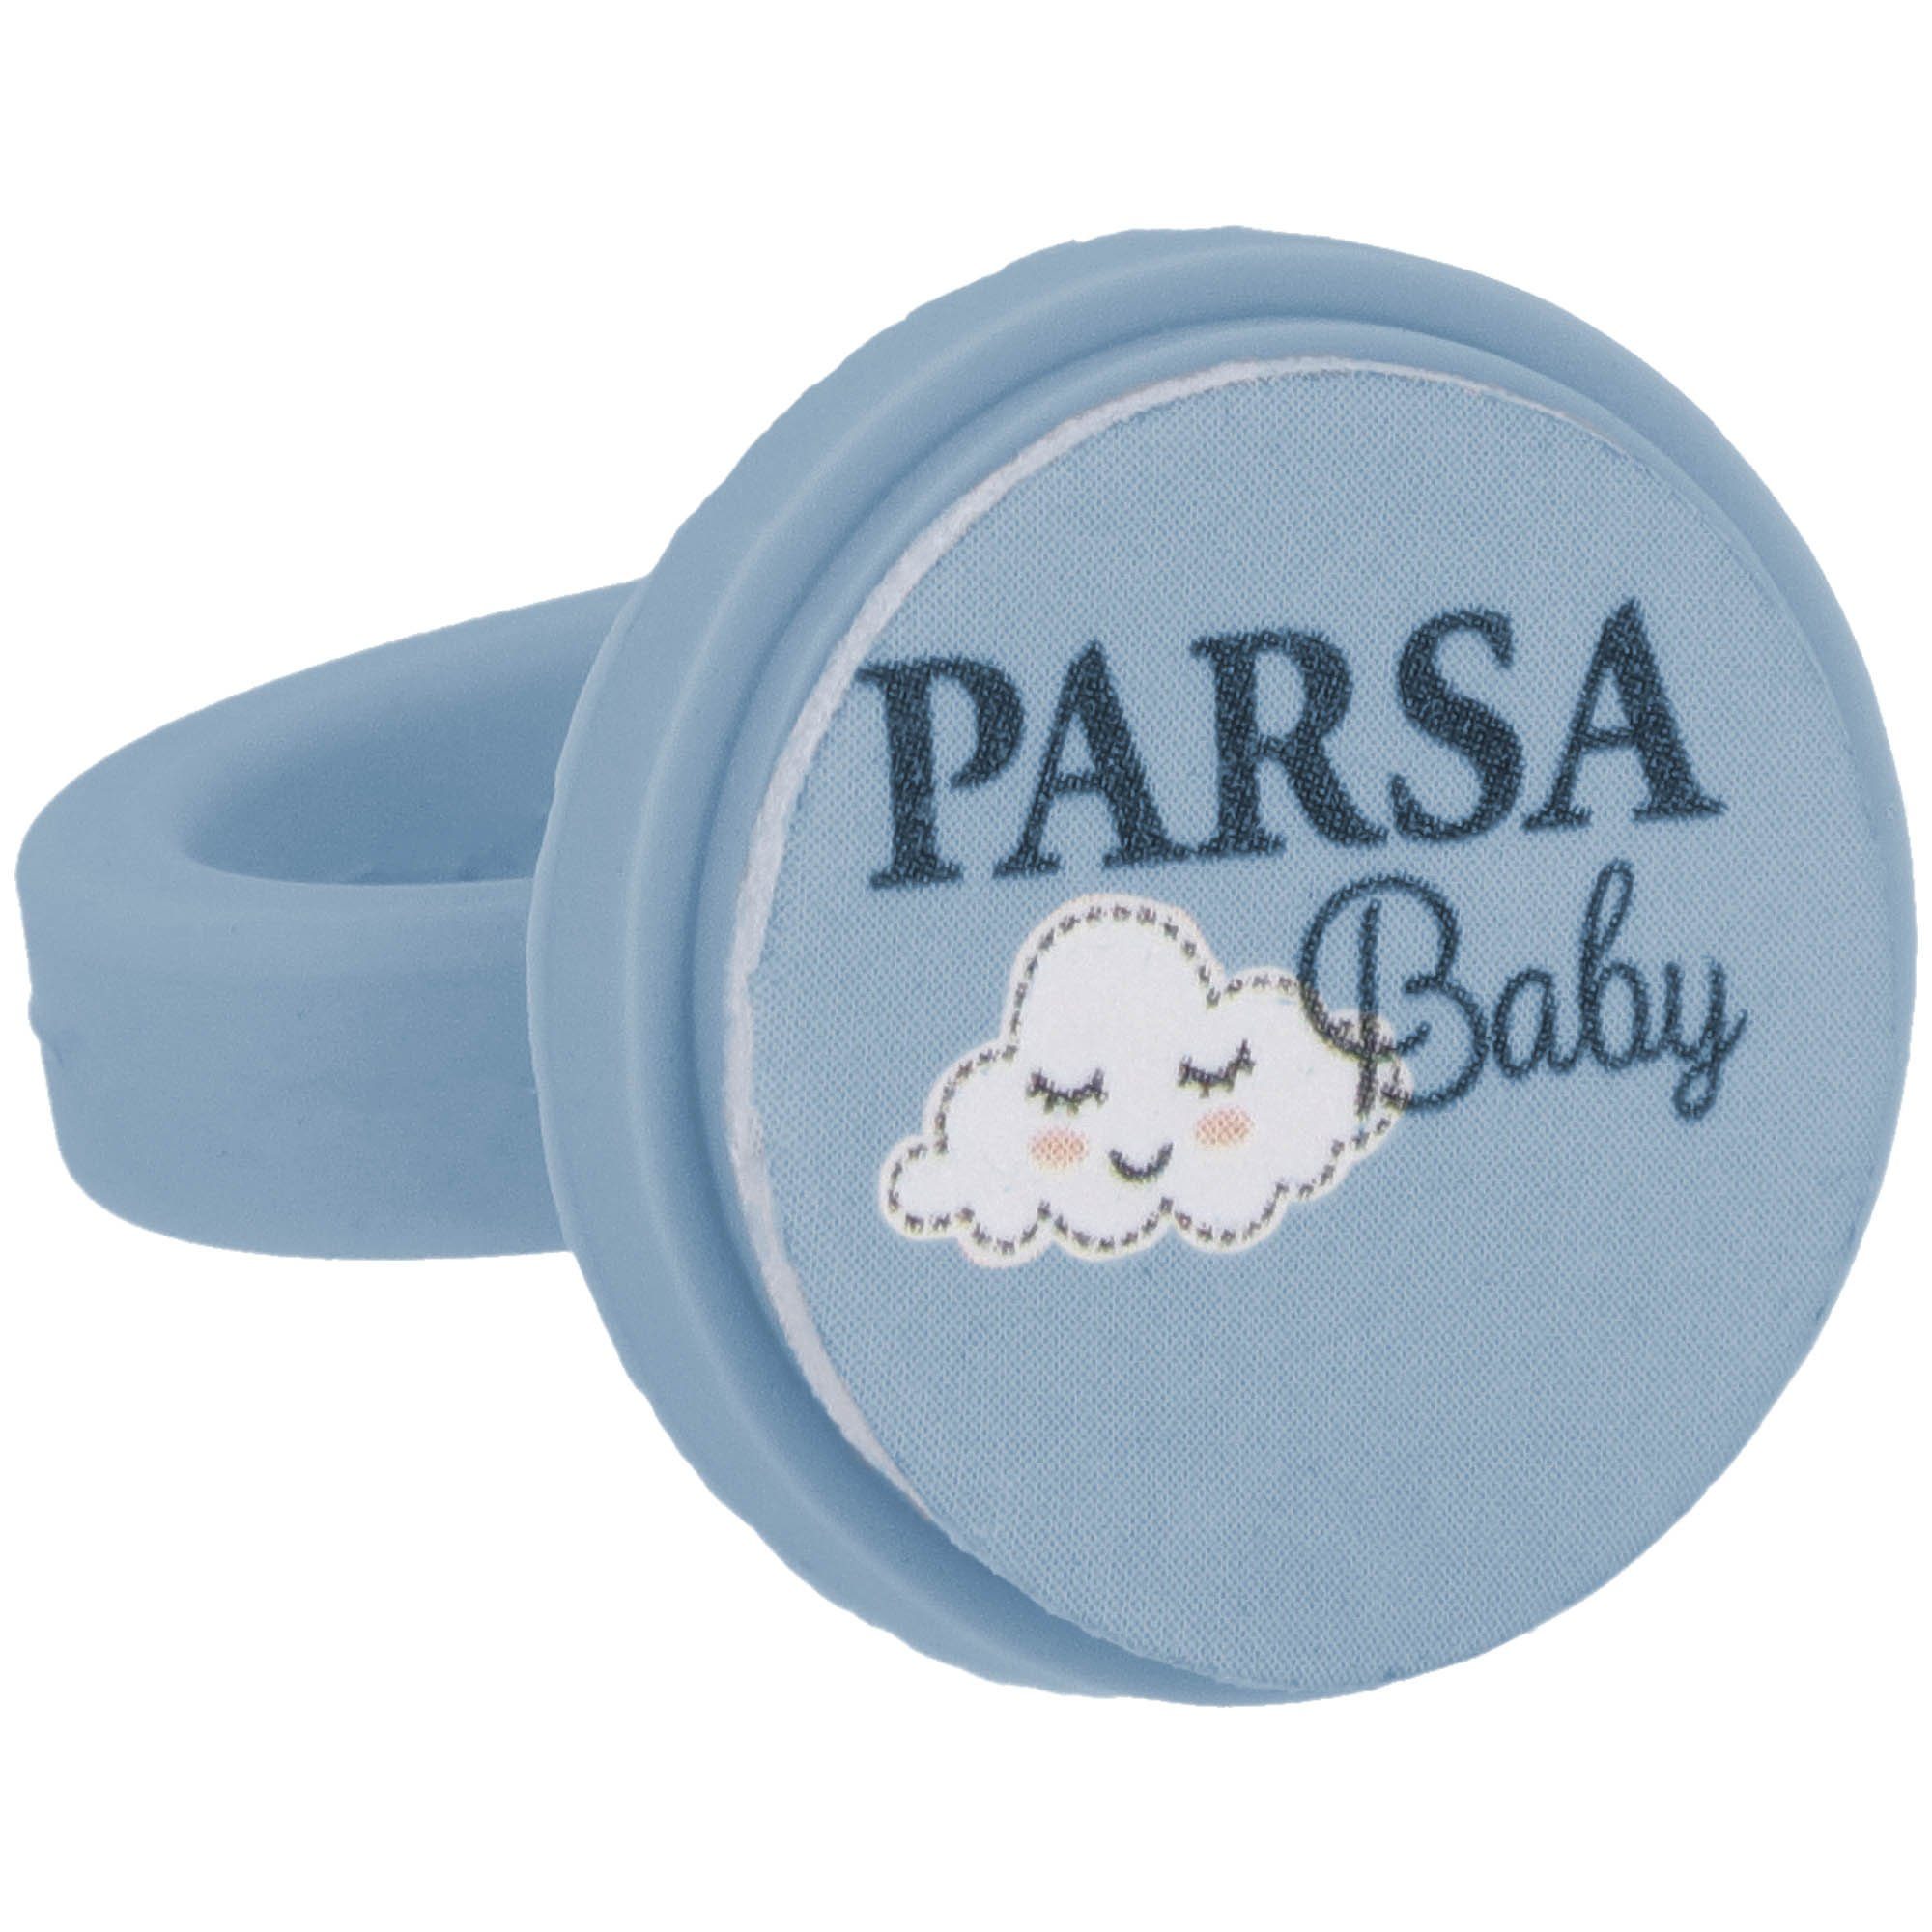 7 PARSA Nagelpflege Beauty Baby-Fußnagelknipser Einwegfeilen mit Baby Babys für / PARSA Feilpads Nagelfeilring